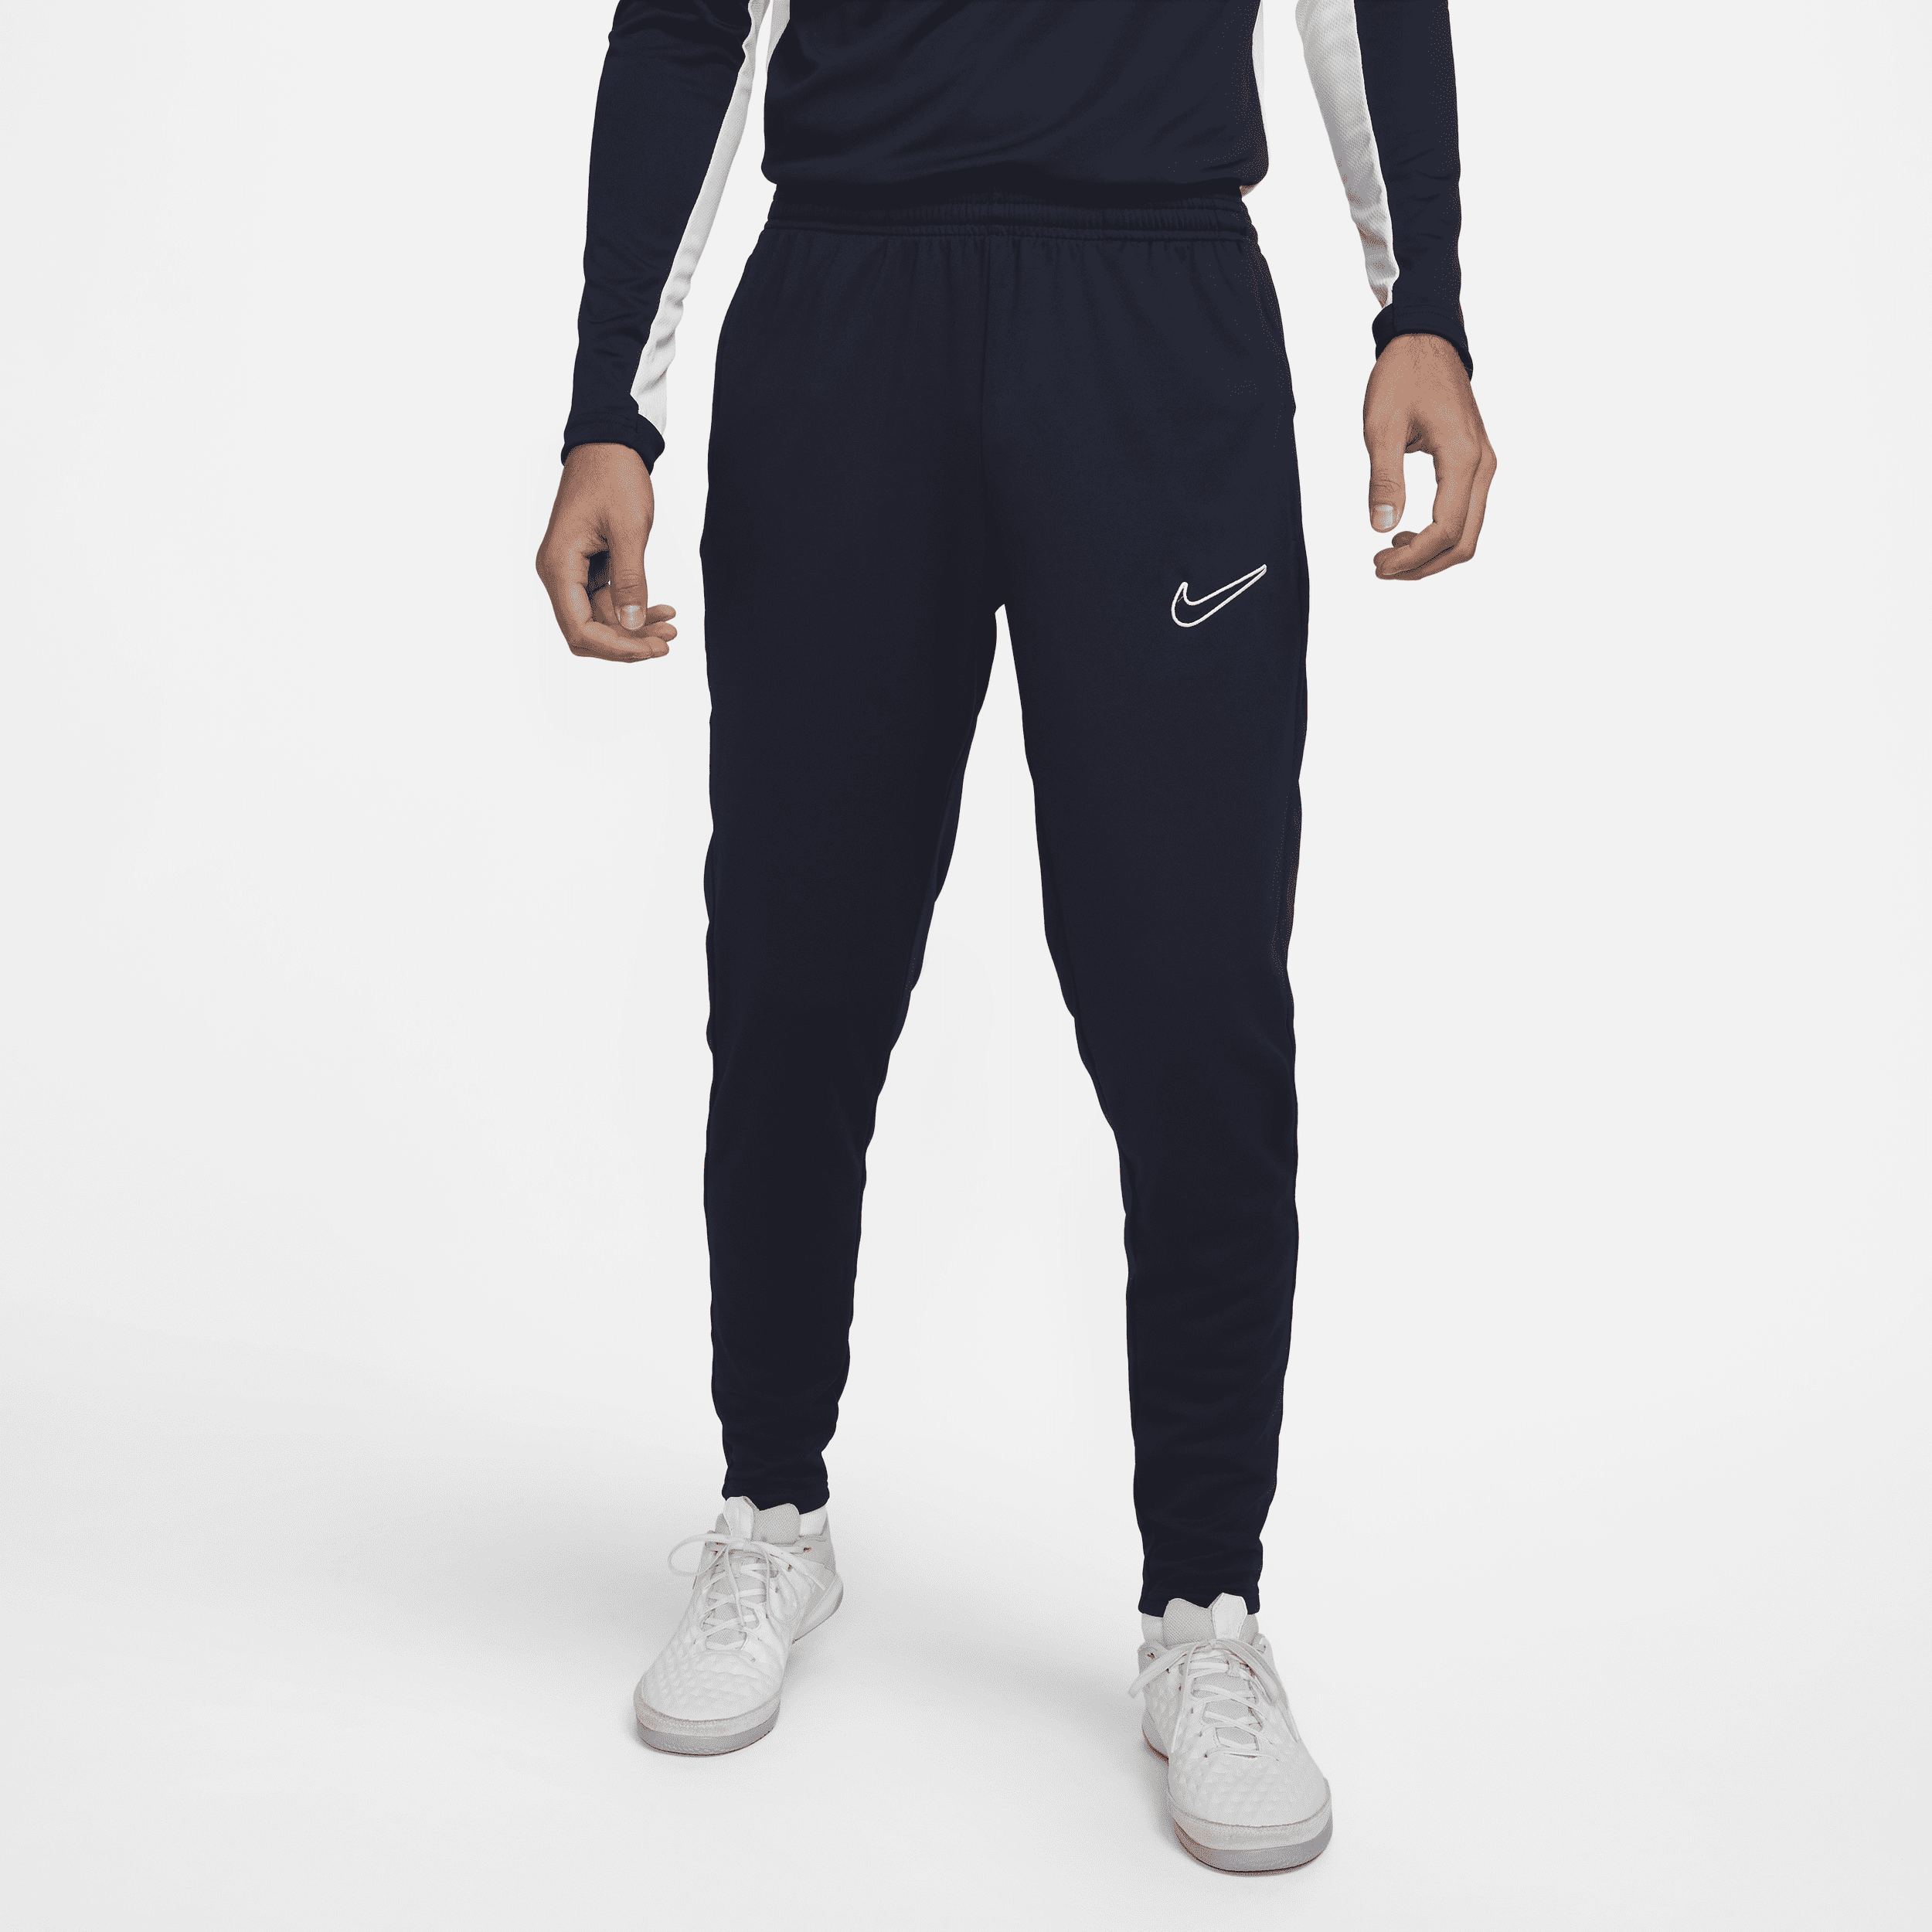 Nike Dri-FIT Academy-fodboldbukser til mænd - blå